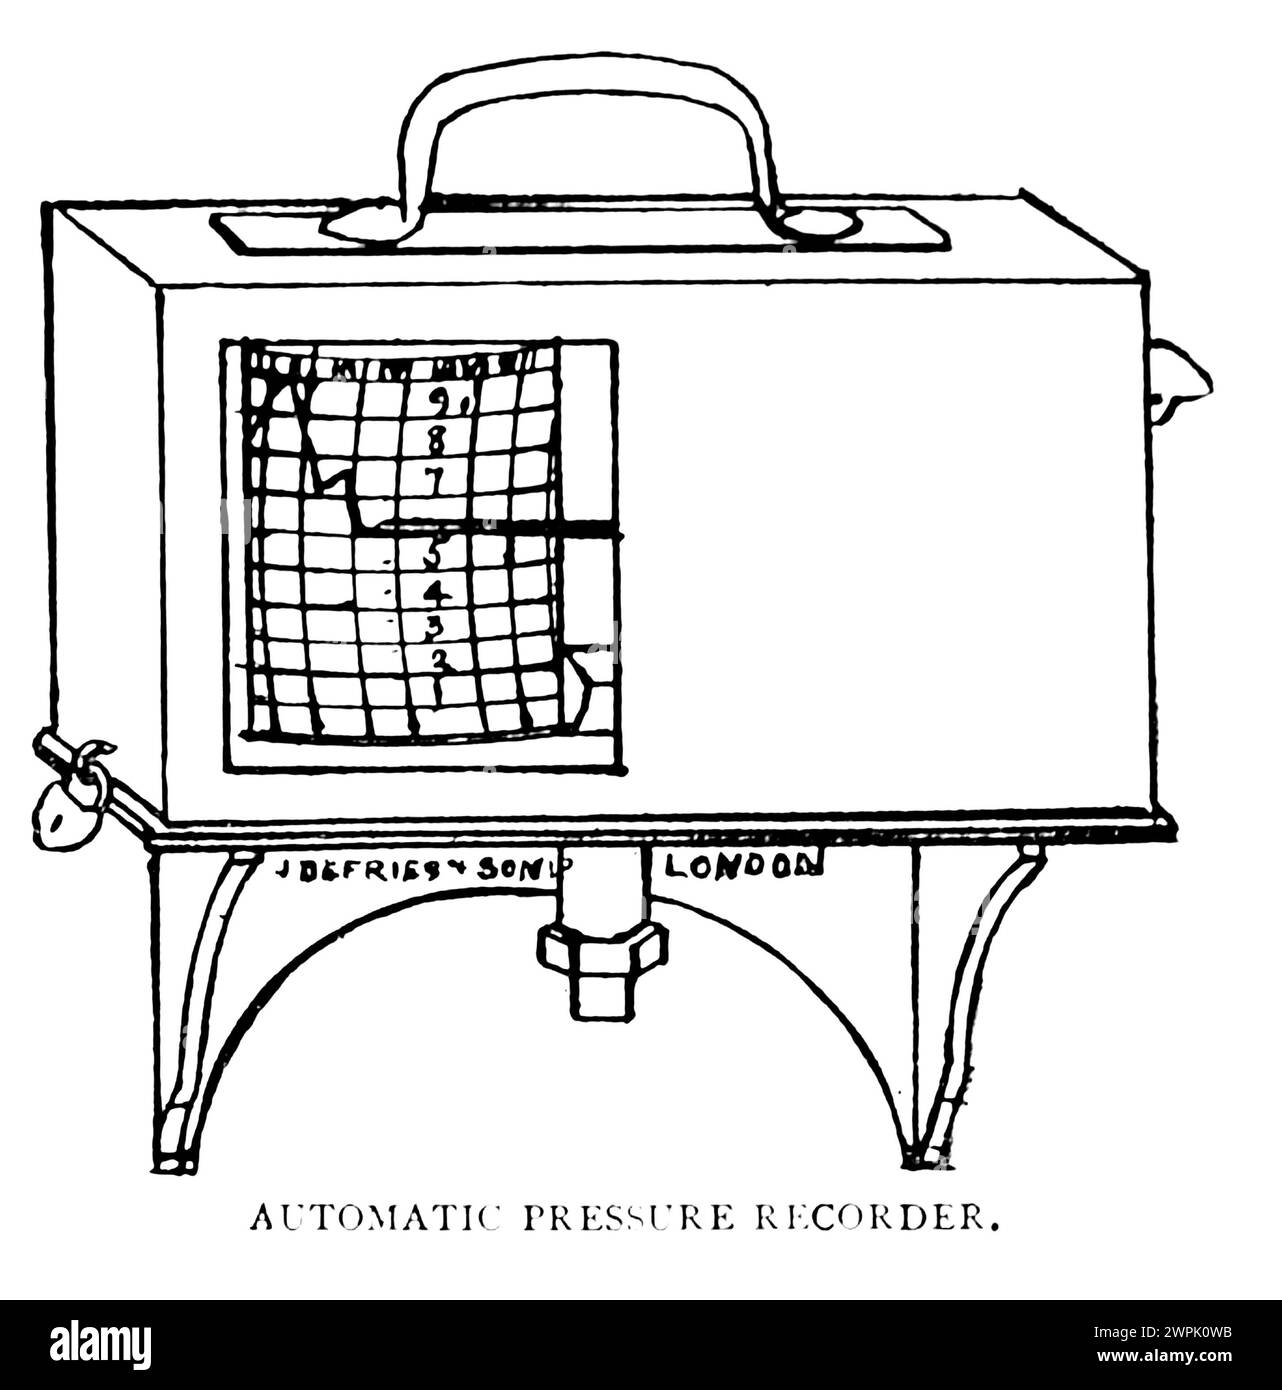 Skizze eines automatischen Druckaufzeichners Stockfoto